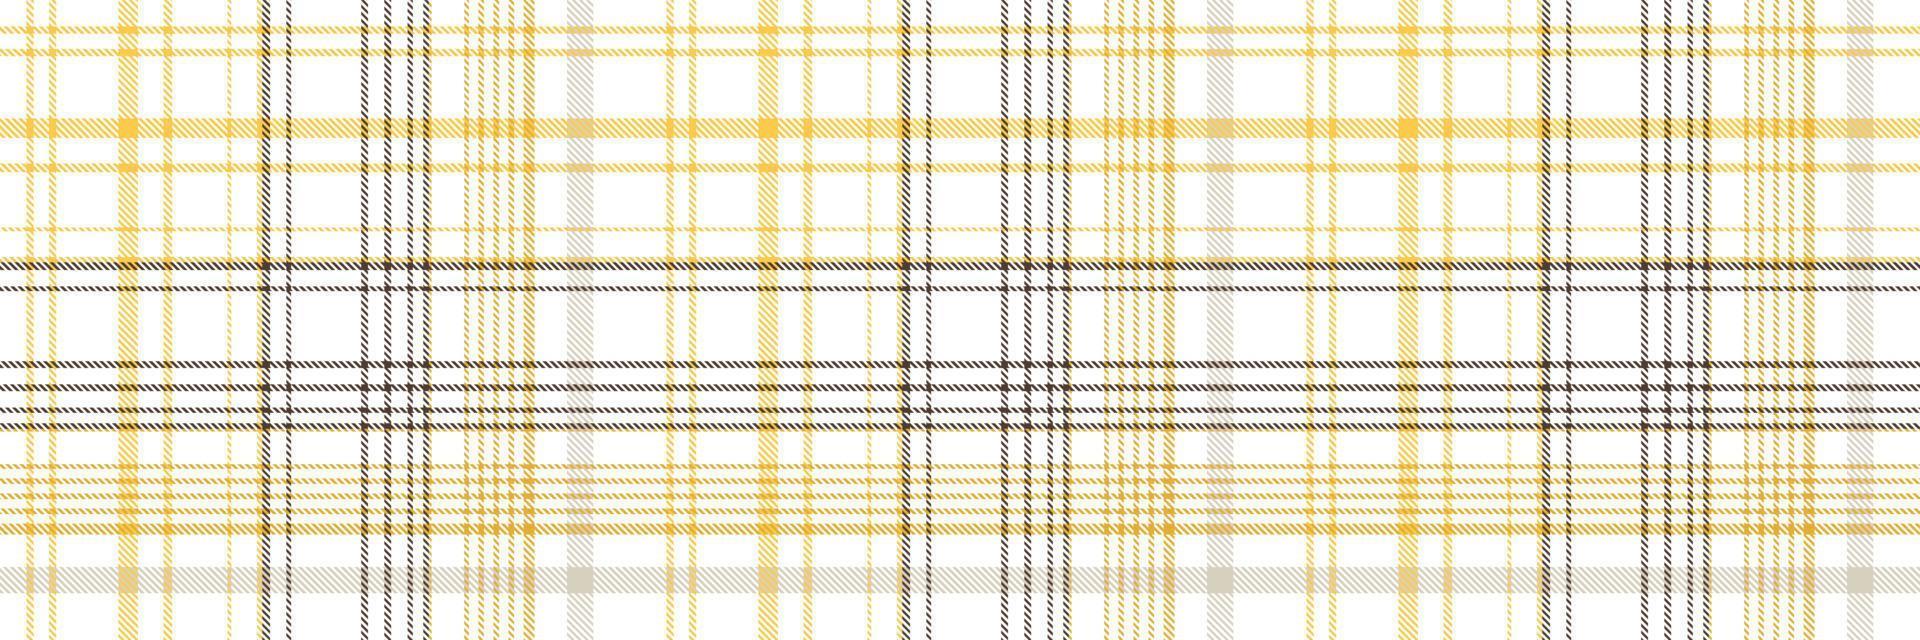 controleren Schotse ruit patroon naadloos is een gevormde kleding bestaande van kris gekruist, horizontaal en verticaal bands in meerdere kleuren.naadloos Schotse ruit voor sjaal, pyjama, deken, dekbed, kilt groot sjaal. vector